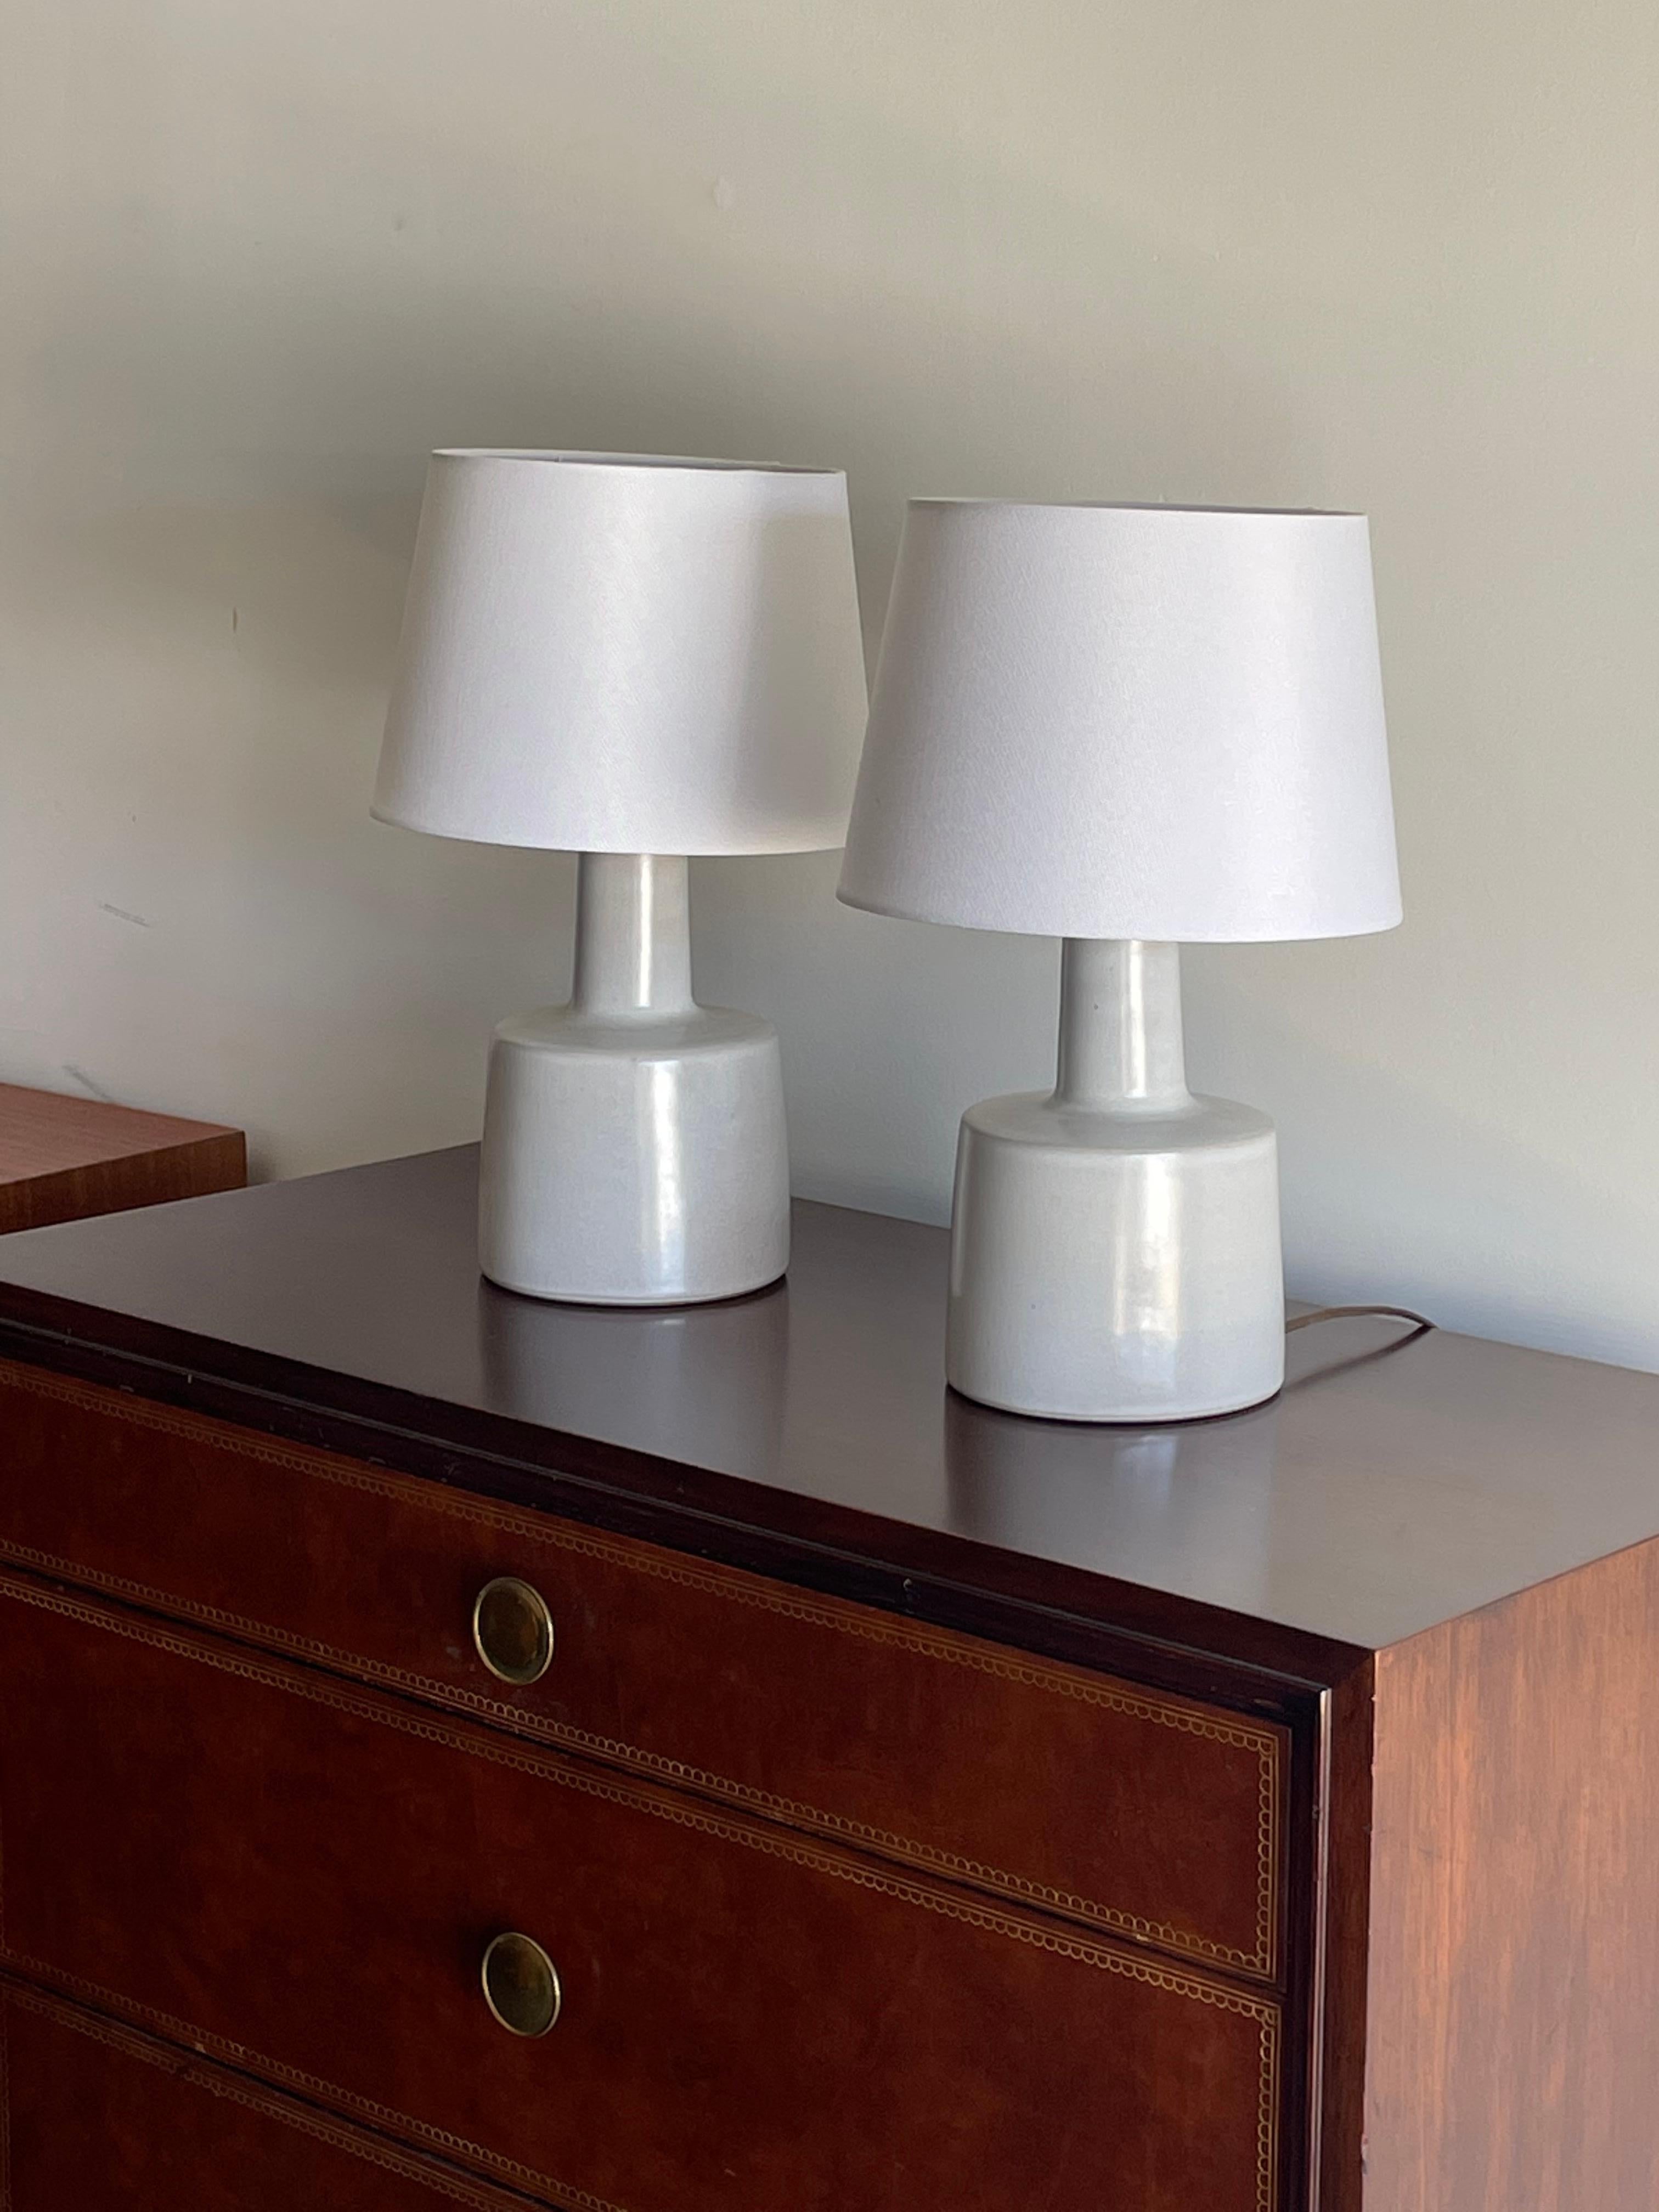 Lampes de table conçues par le duo de céramistes Jane et Gordon Martz pour Marshall Studios. Couleur : gris clair/blanc cassé 

Dimensions totales : 16